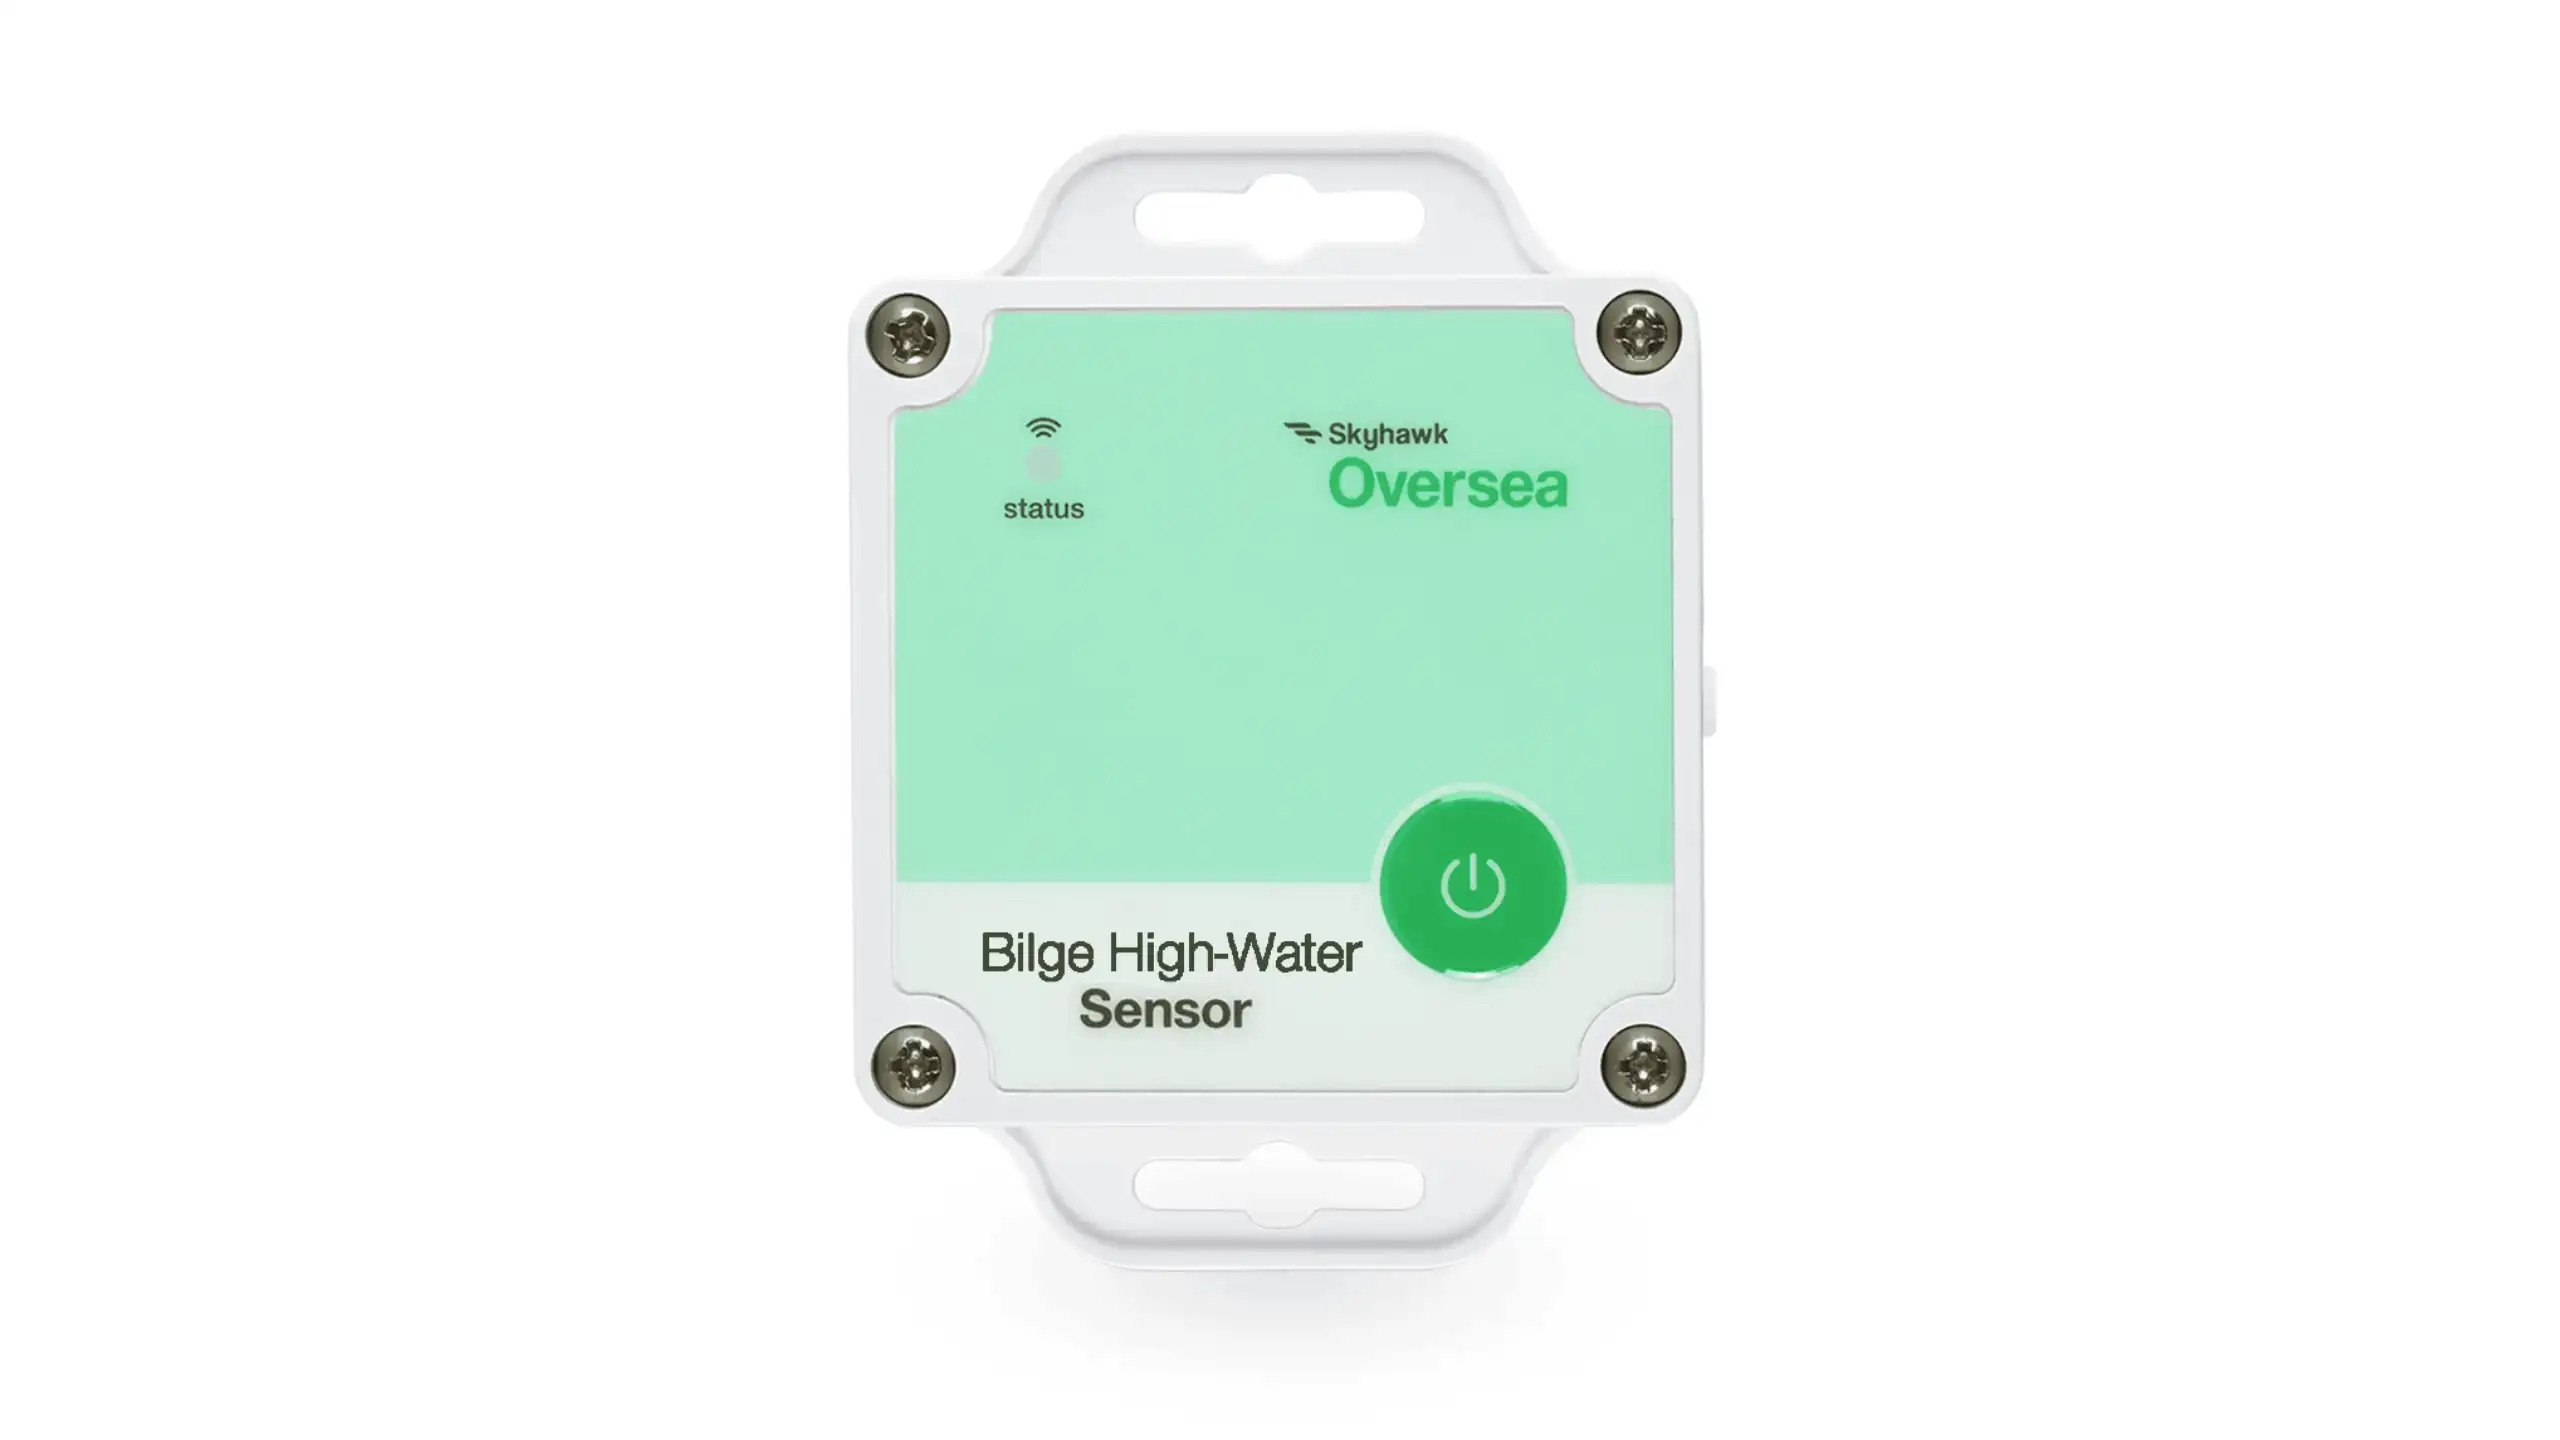 Oversea Sensor Bilge HighWater